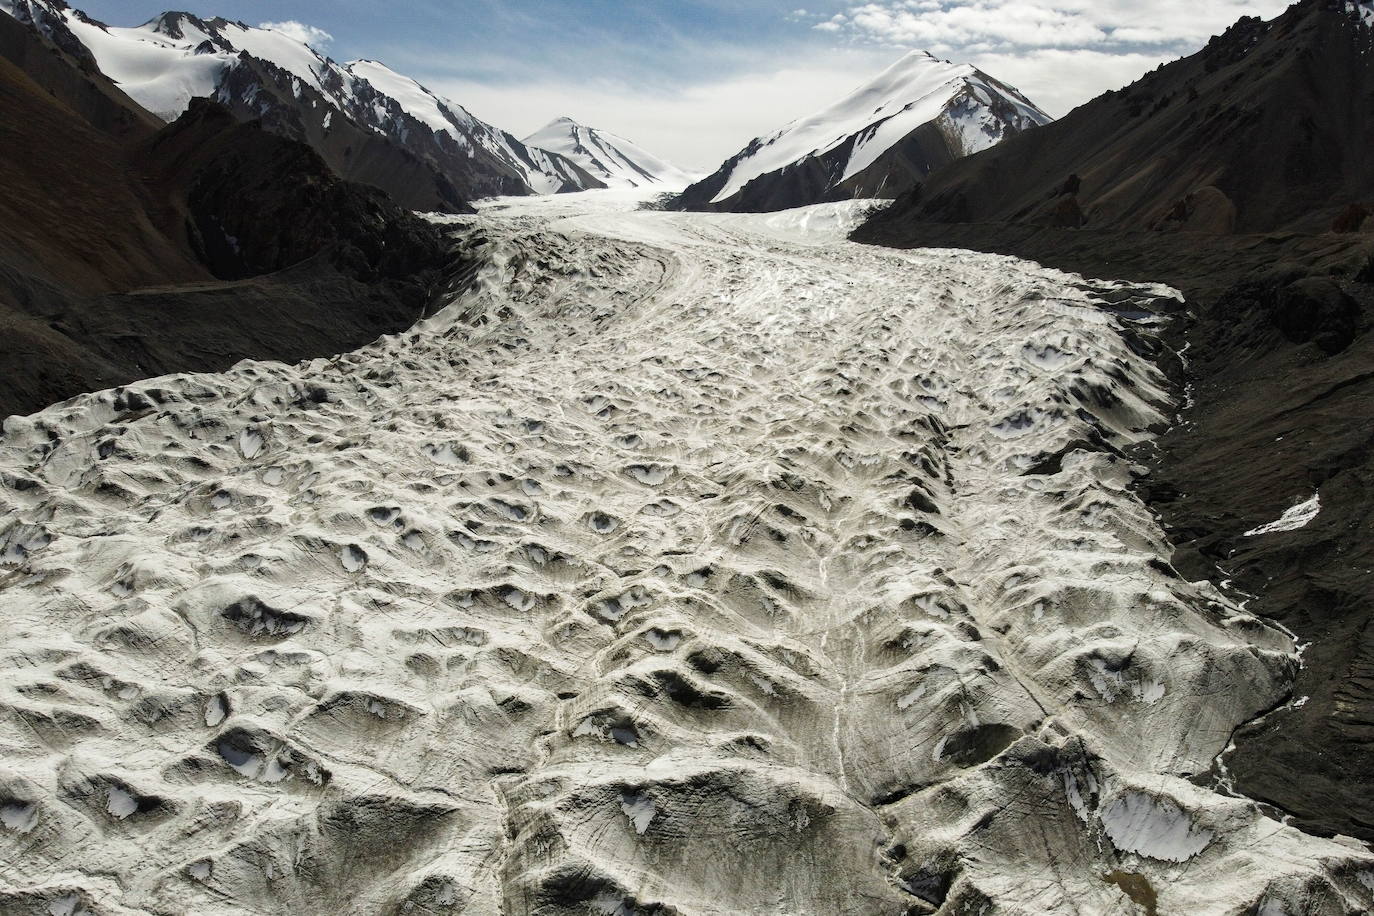 El glaciar Laohugou No. 12 en las montañas Qilian, condado autónomo mongol de Subei en la provincia de Gansu, China. Estos elementos sufren deshielo por efecto del calentamiento global.